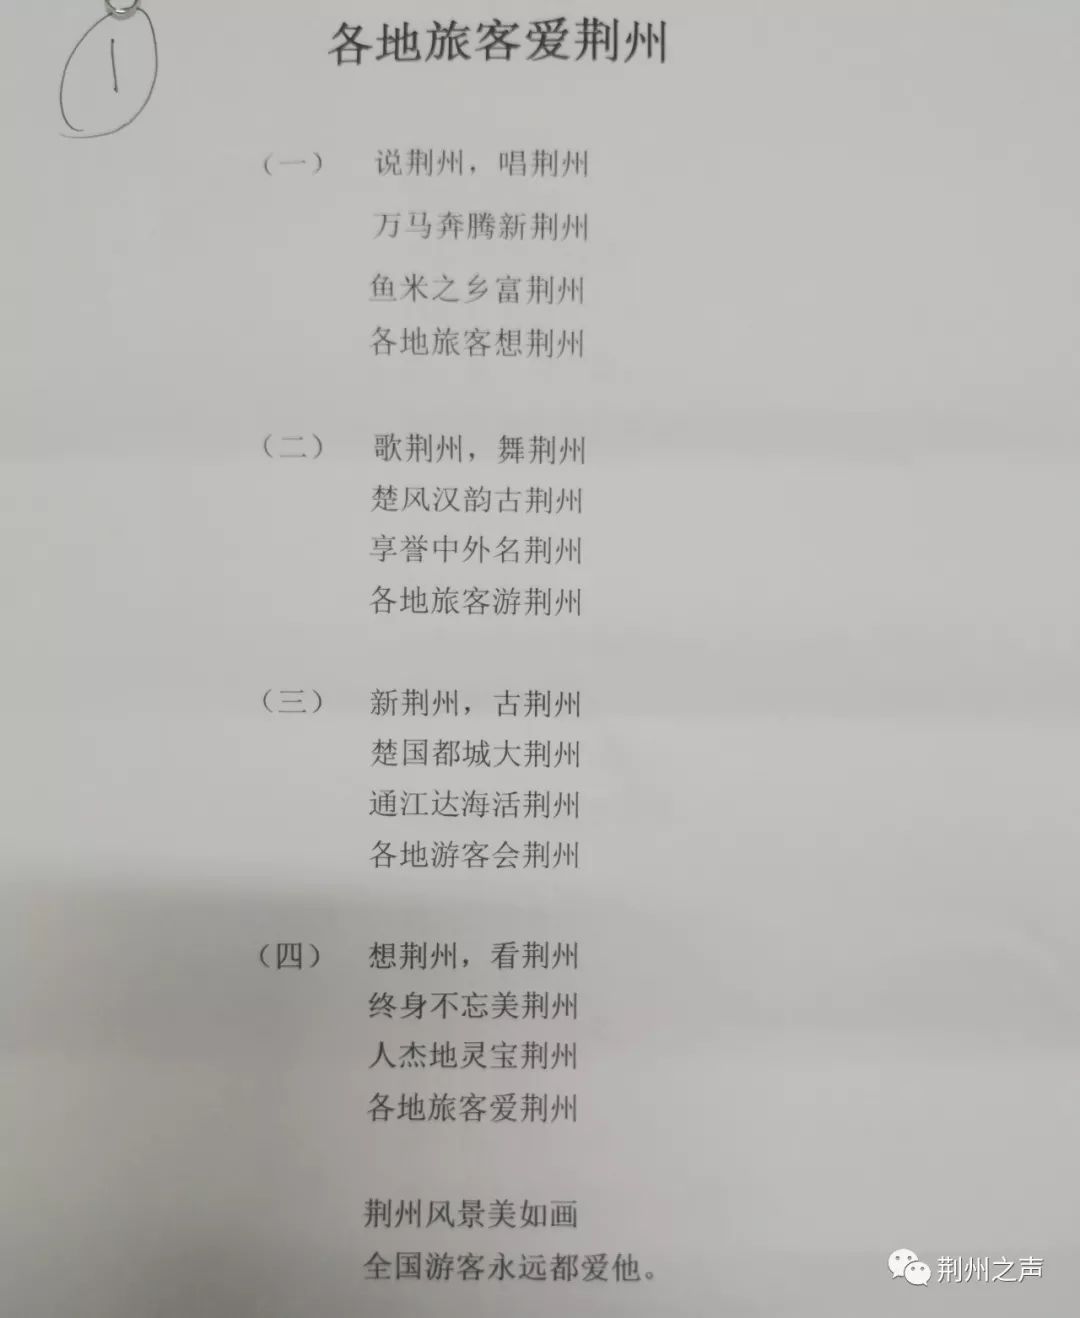 2019 原创歌曲排行榜_山音海乐 青岛最动听原创歌曲排行榜2019年度十大金